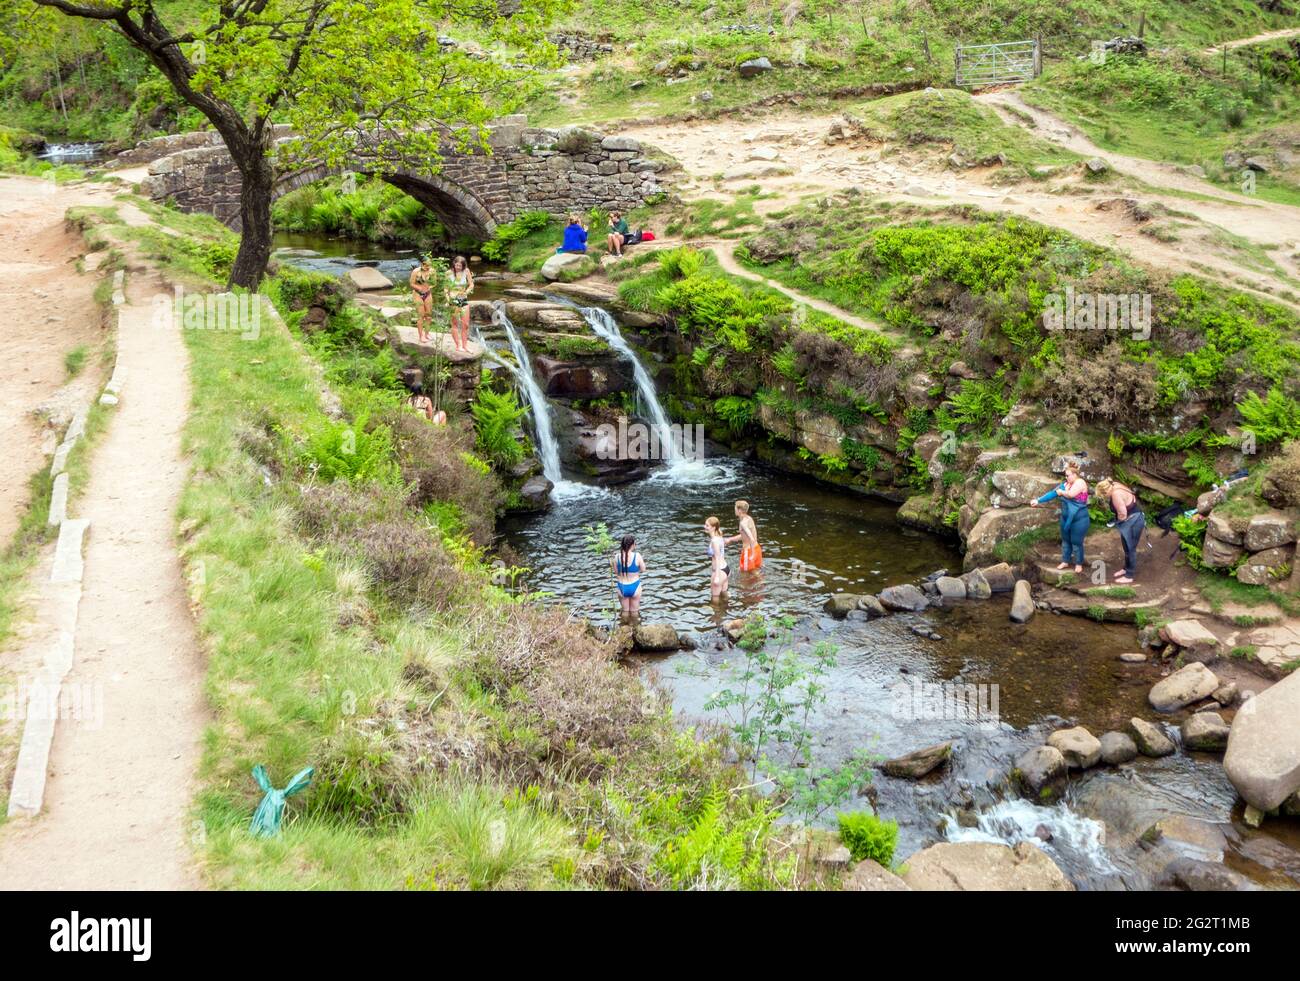 Leute, die im Fluss Dane am Three Shires Head, wo Cheshire, Derbyshire und Staffordshire im Peak District aufeinandertreffen, Picknicken und schwimmen Stockfoto